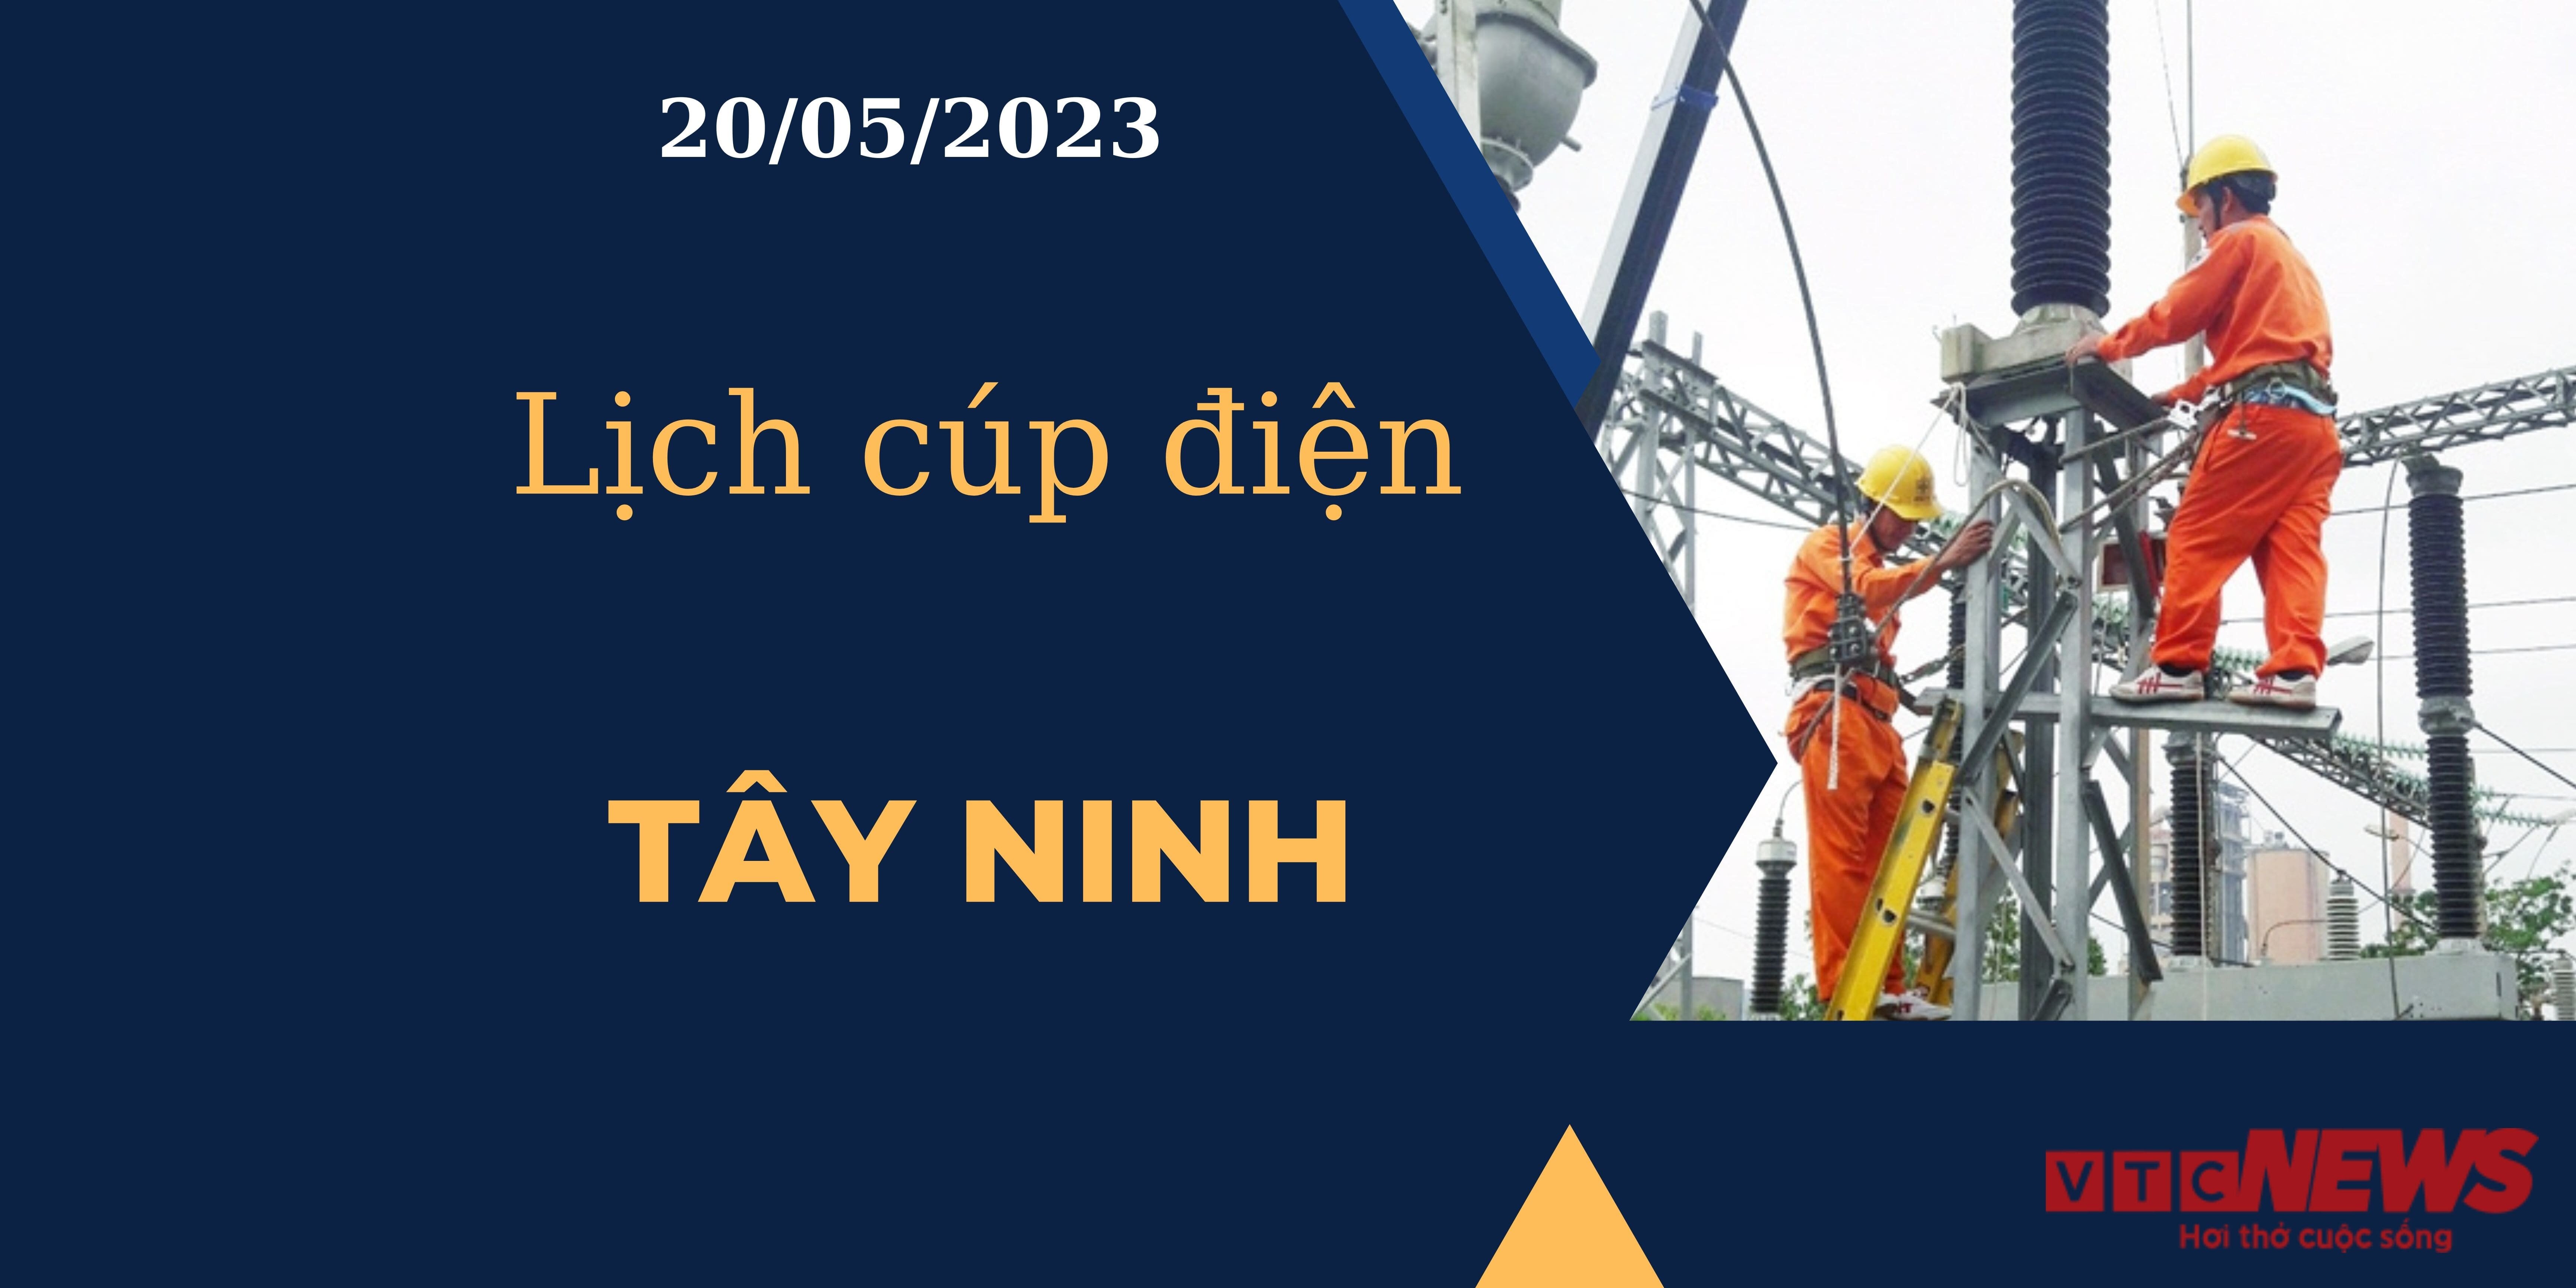 Lịch cúp điện hôm nay ngày 20/05/2023 tại Tây Ninh - 1